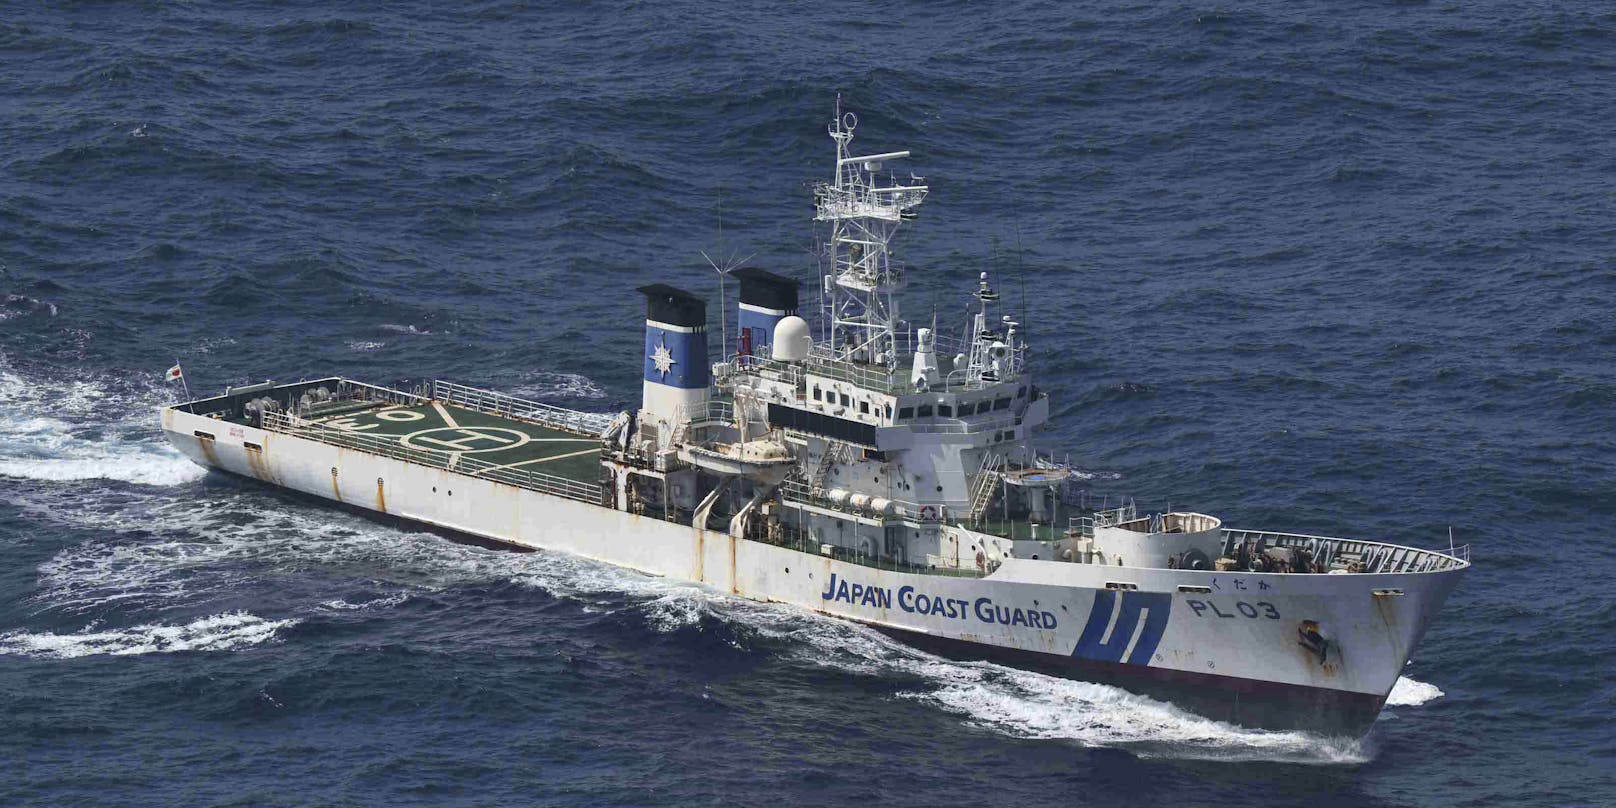 Die japanische Küstenwache sucht derzeit nach dem verschollenen Frachter.